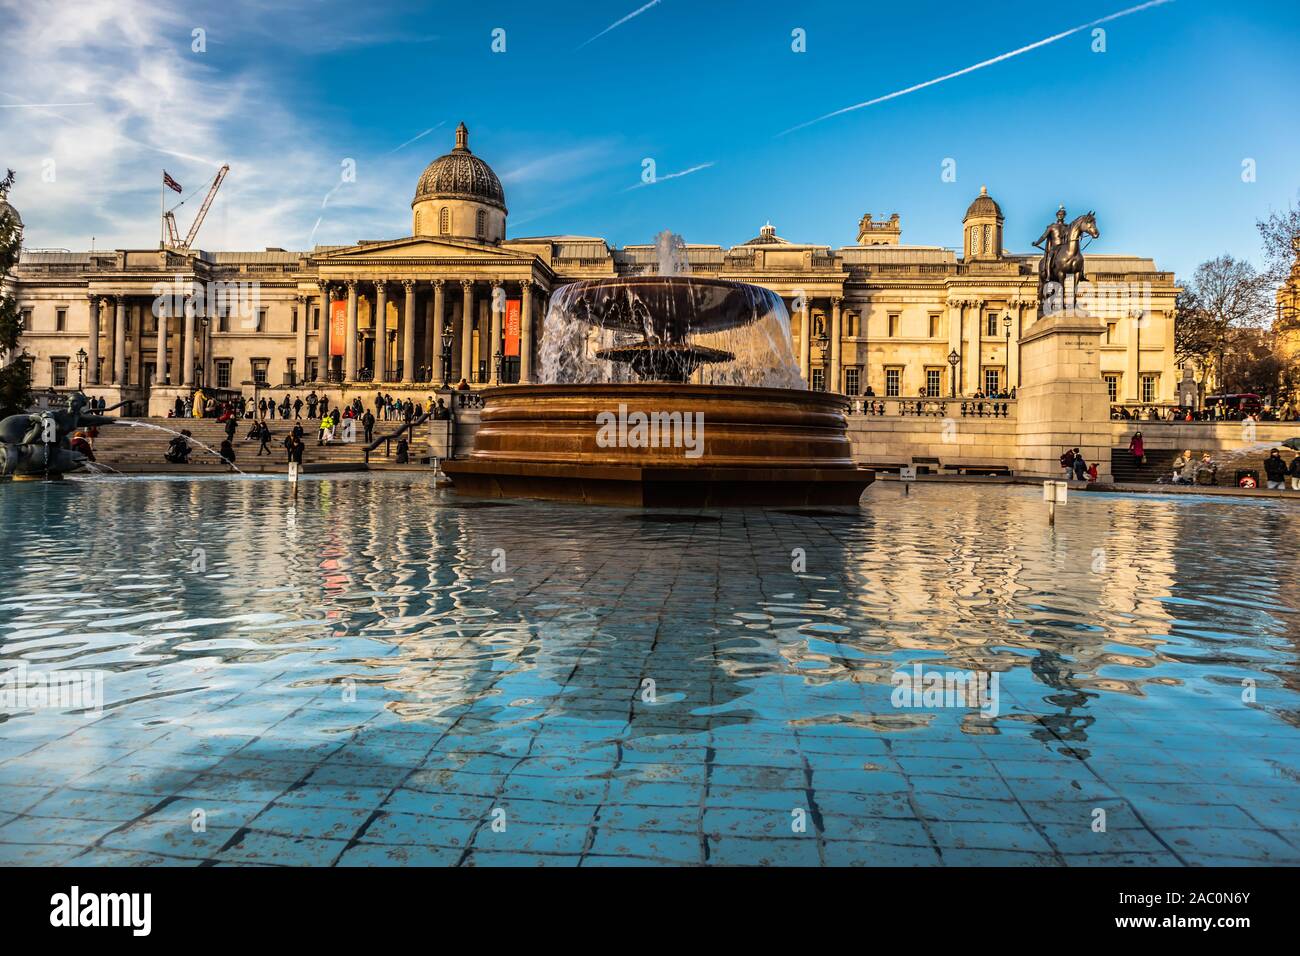 Vue sur la fontaine emblématique à Trafalgar Square et la National Gallery de Londres, Angleterre Banque D'Images